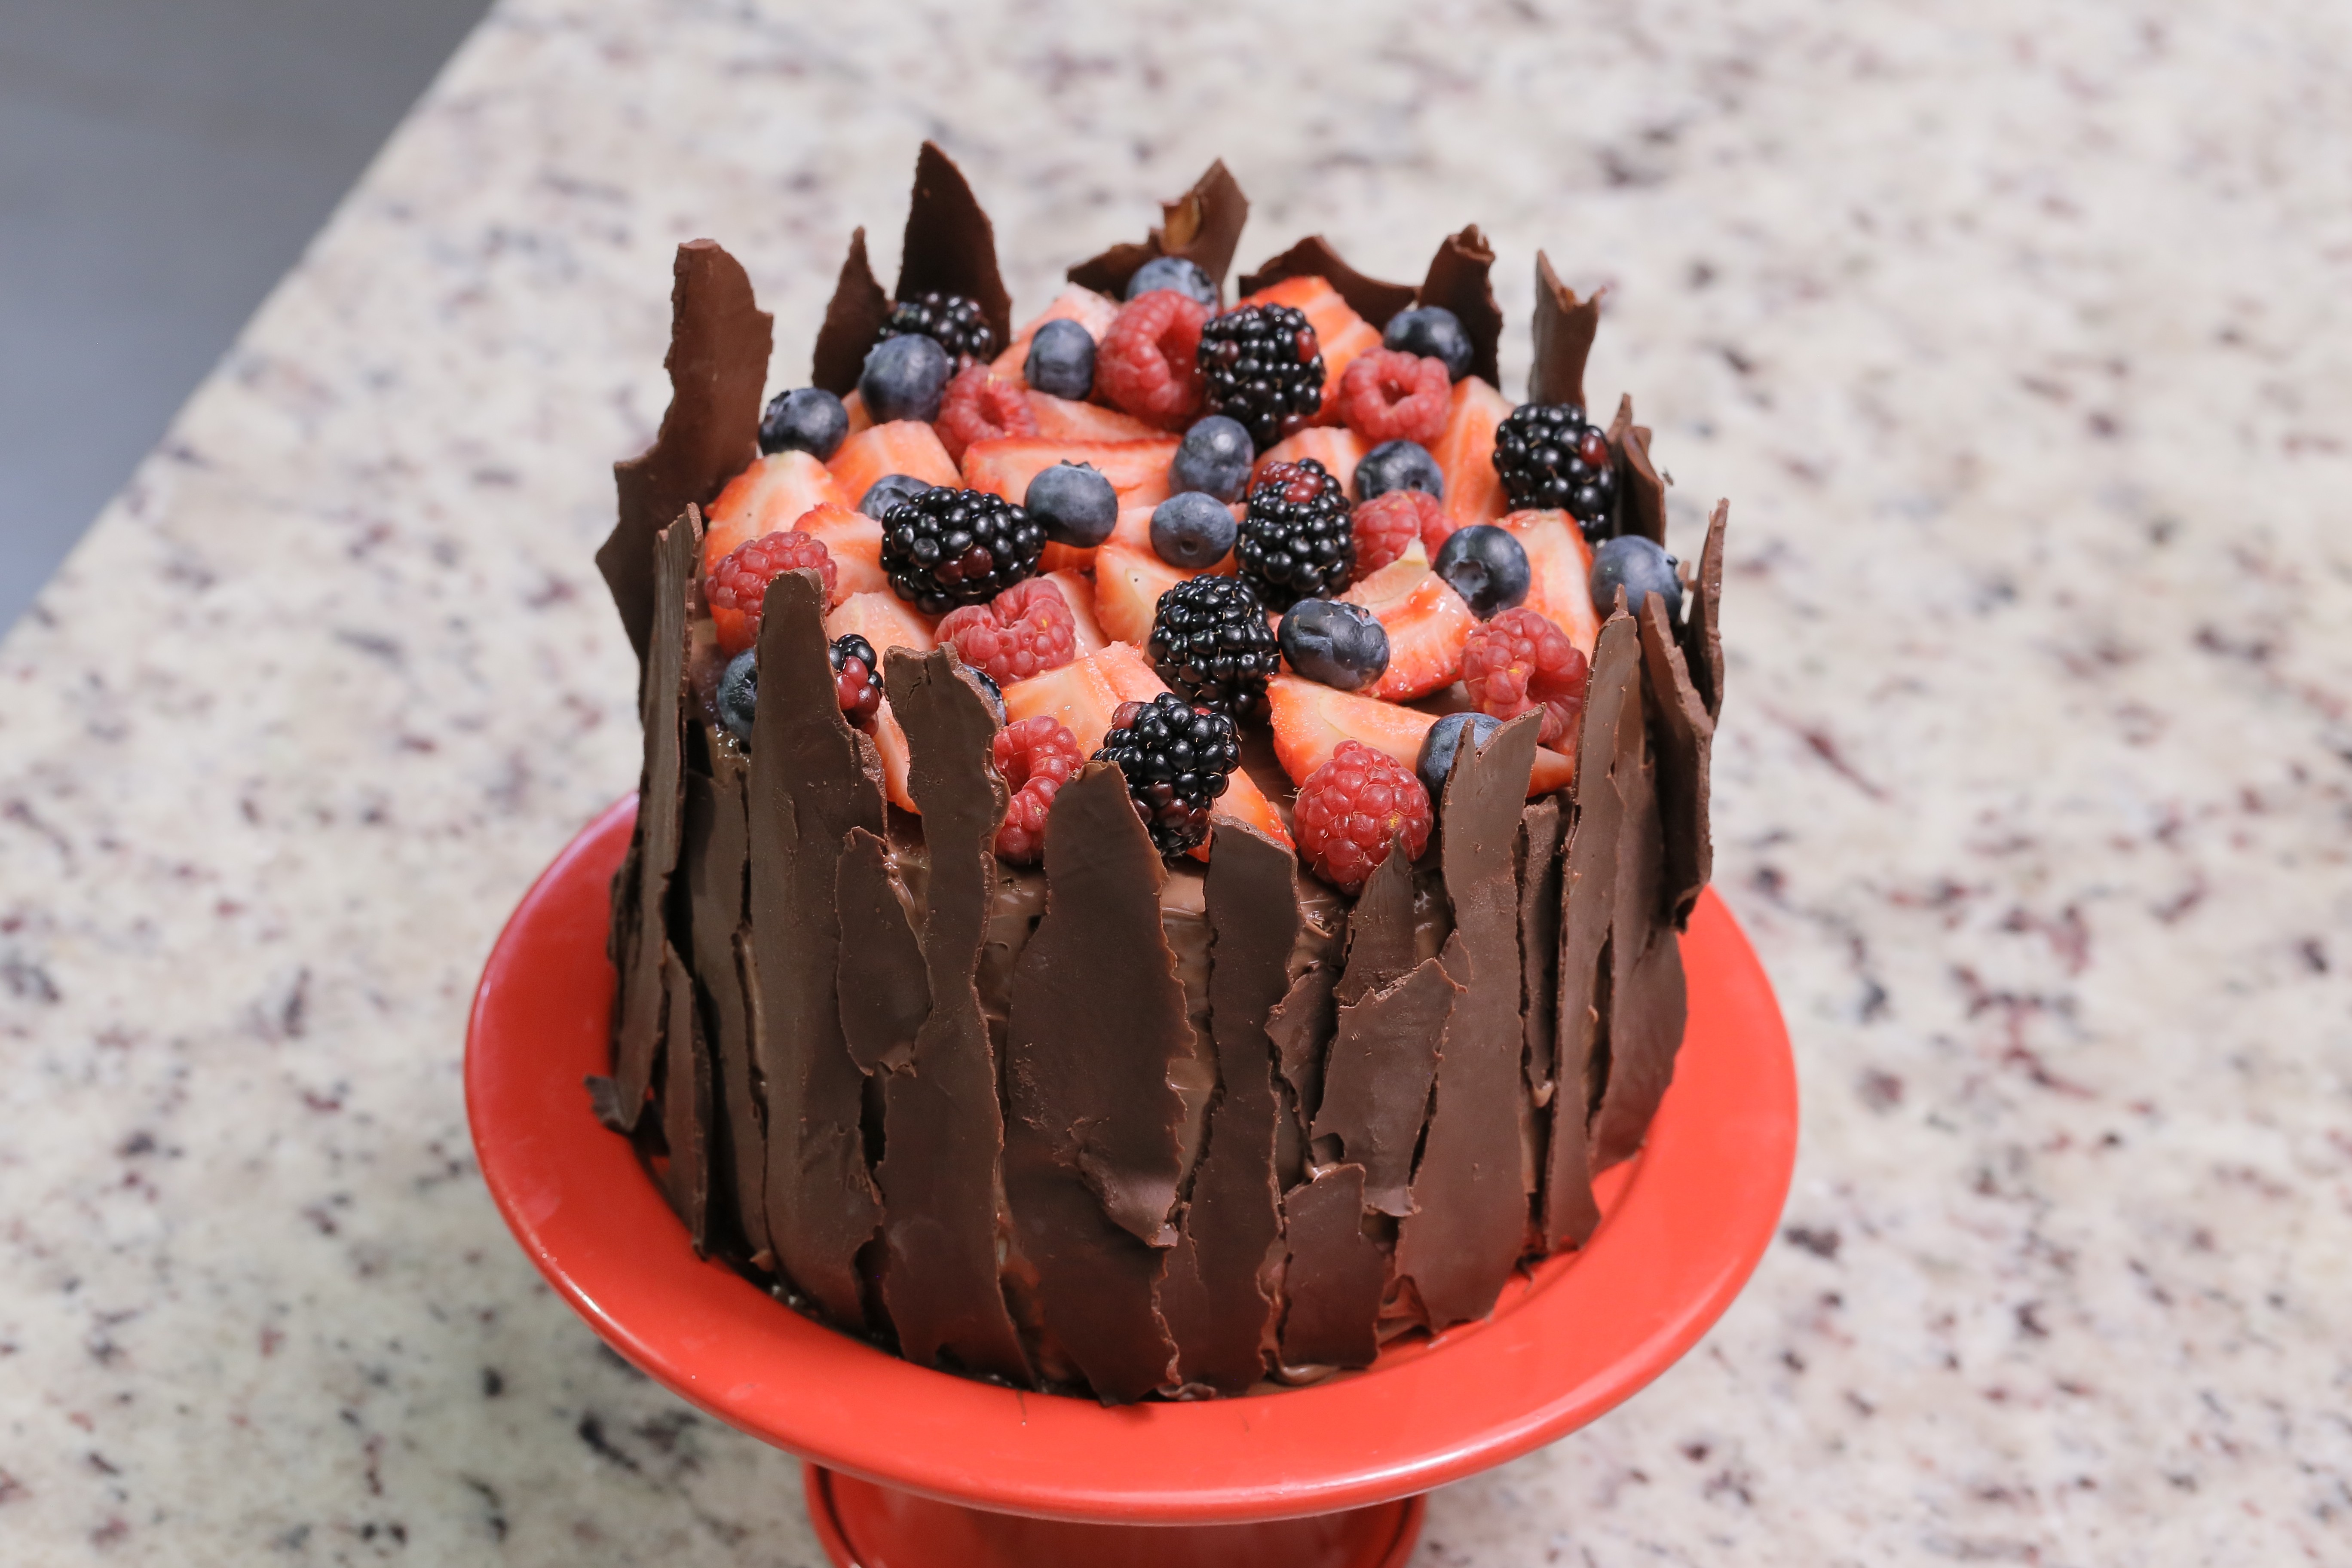 Que Seja Doce: bolo de frutas com ganache de chocolate branco (Foto: Divulgação)